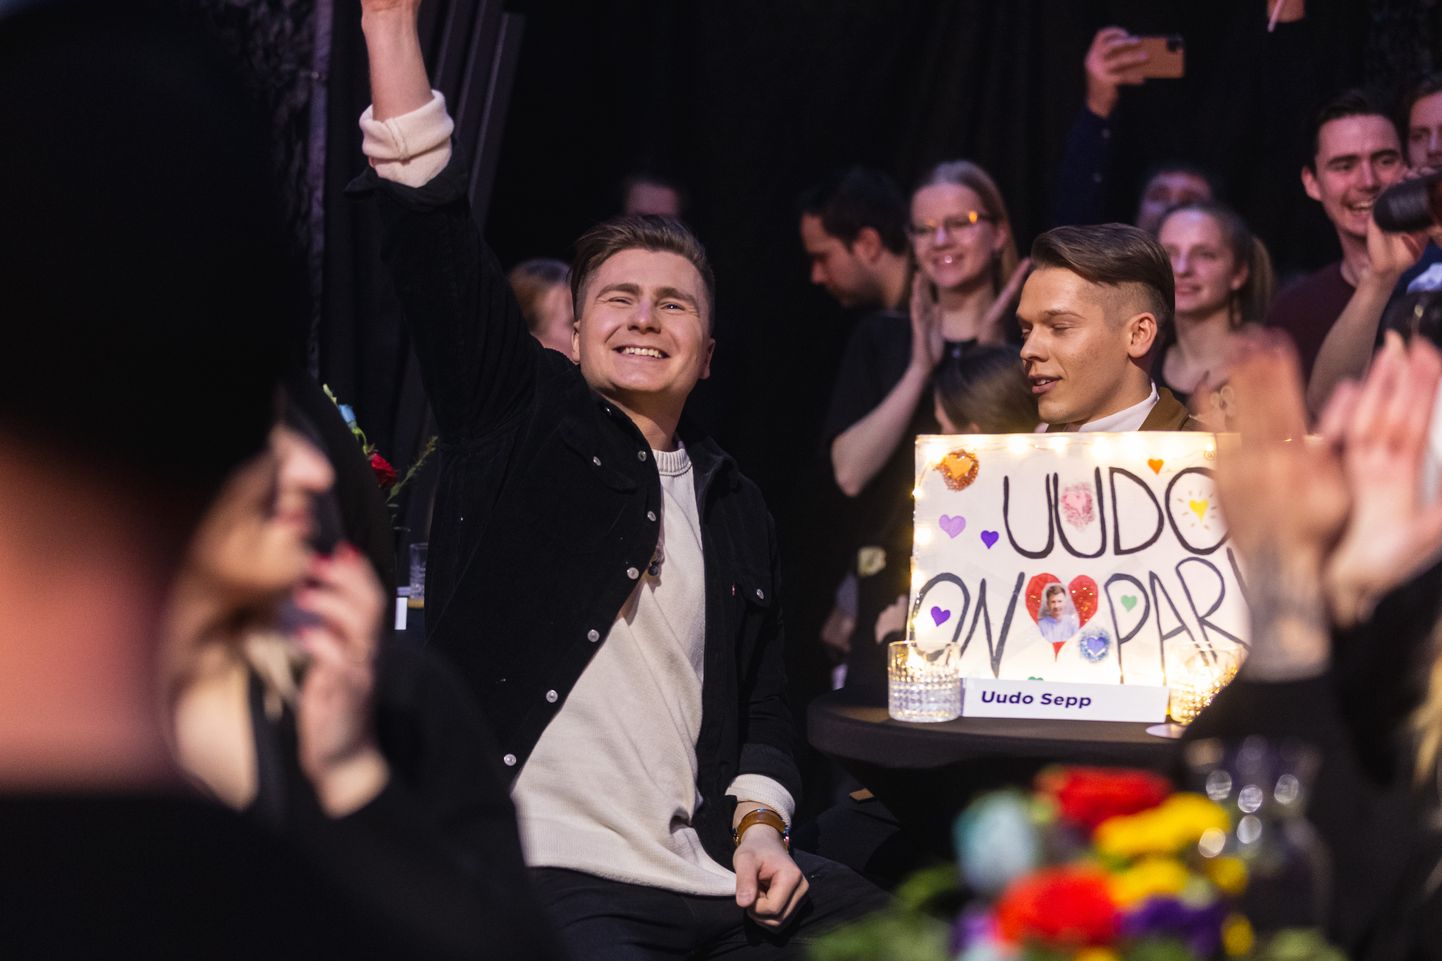 Eesti Laul 2020, Уудо Сепп радуется прохождению в финал